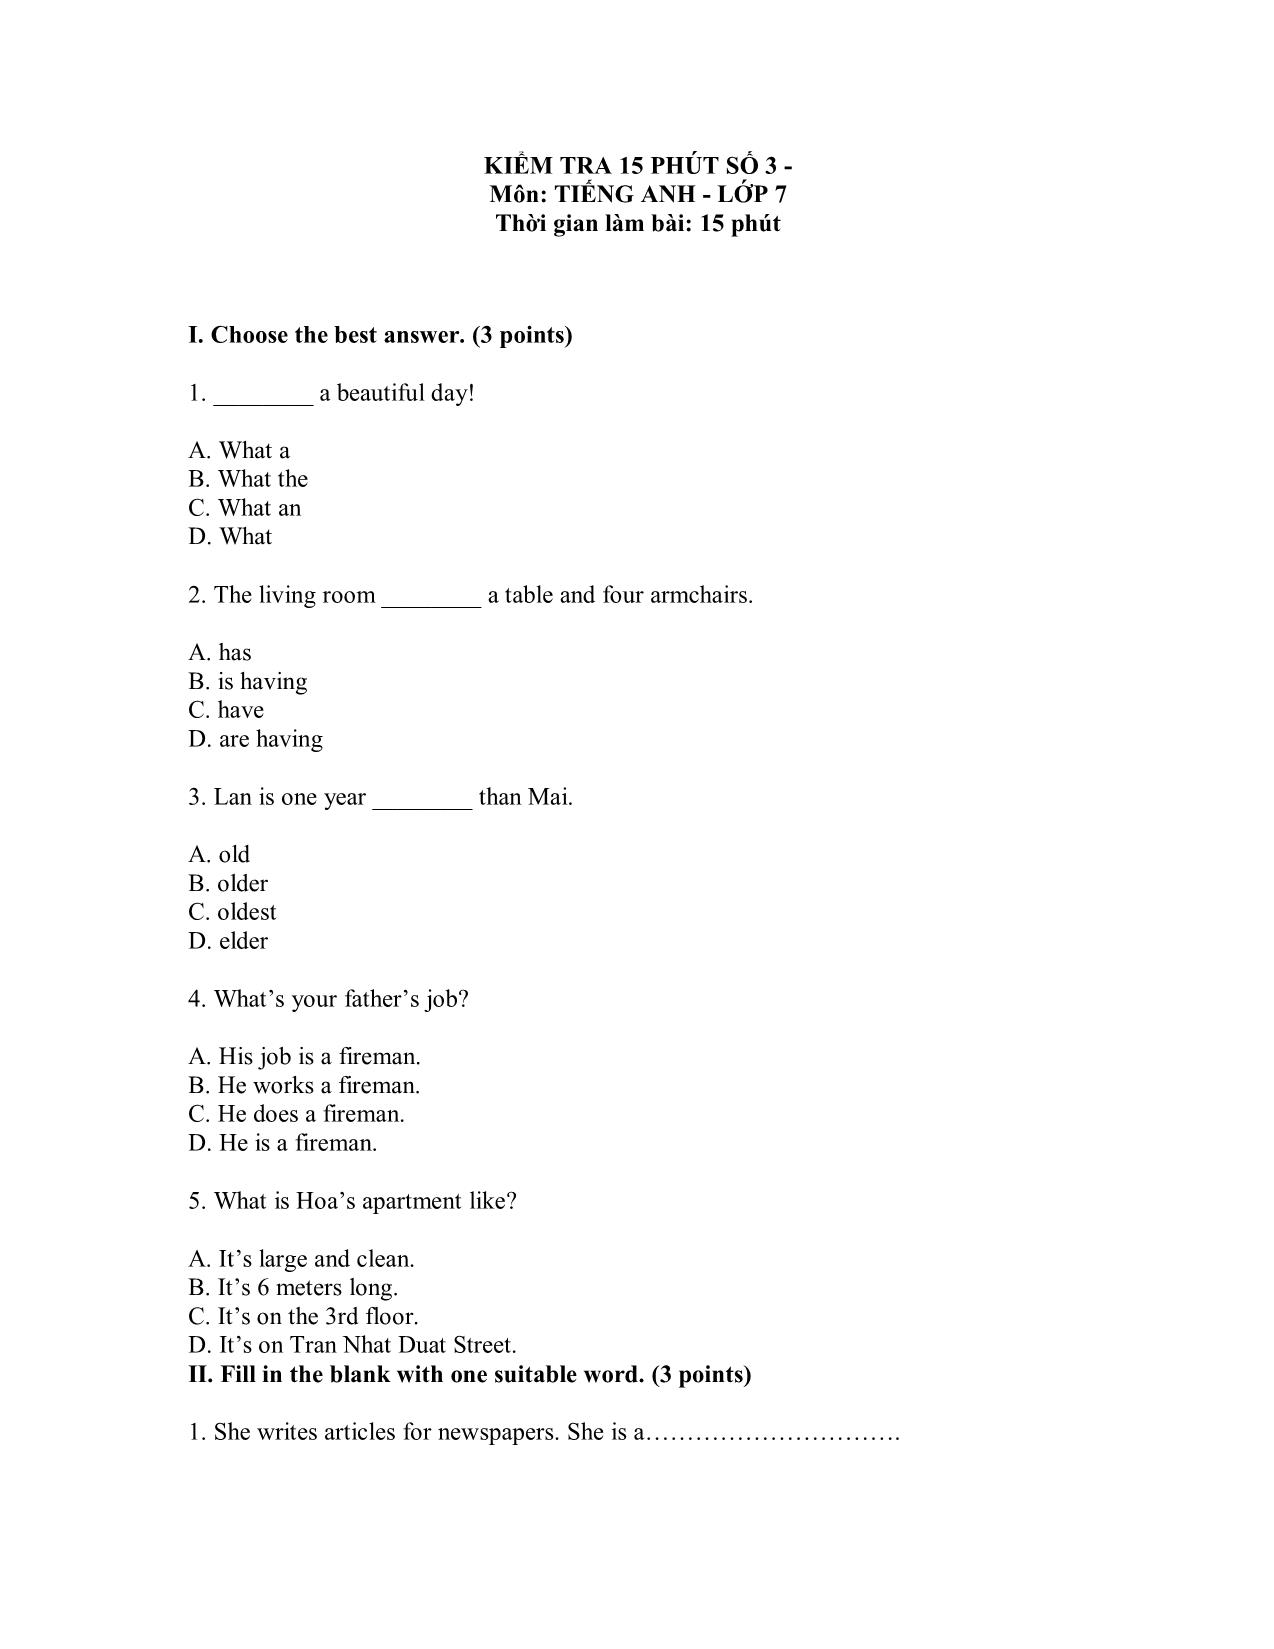 Bài kiểm tra 15 phút số 3 môn tiếng Anh - Lớp 7 trang 1